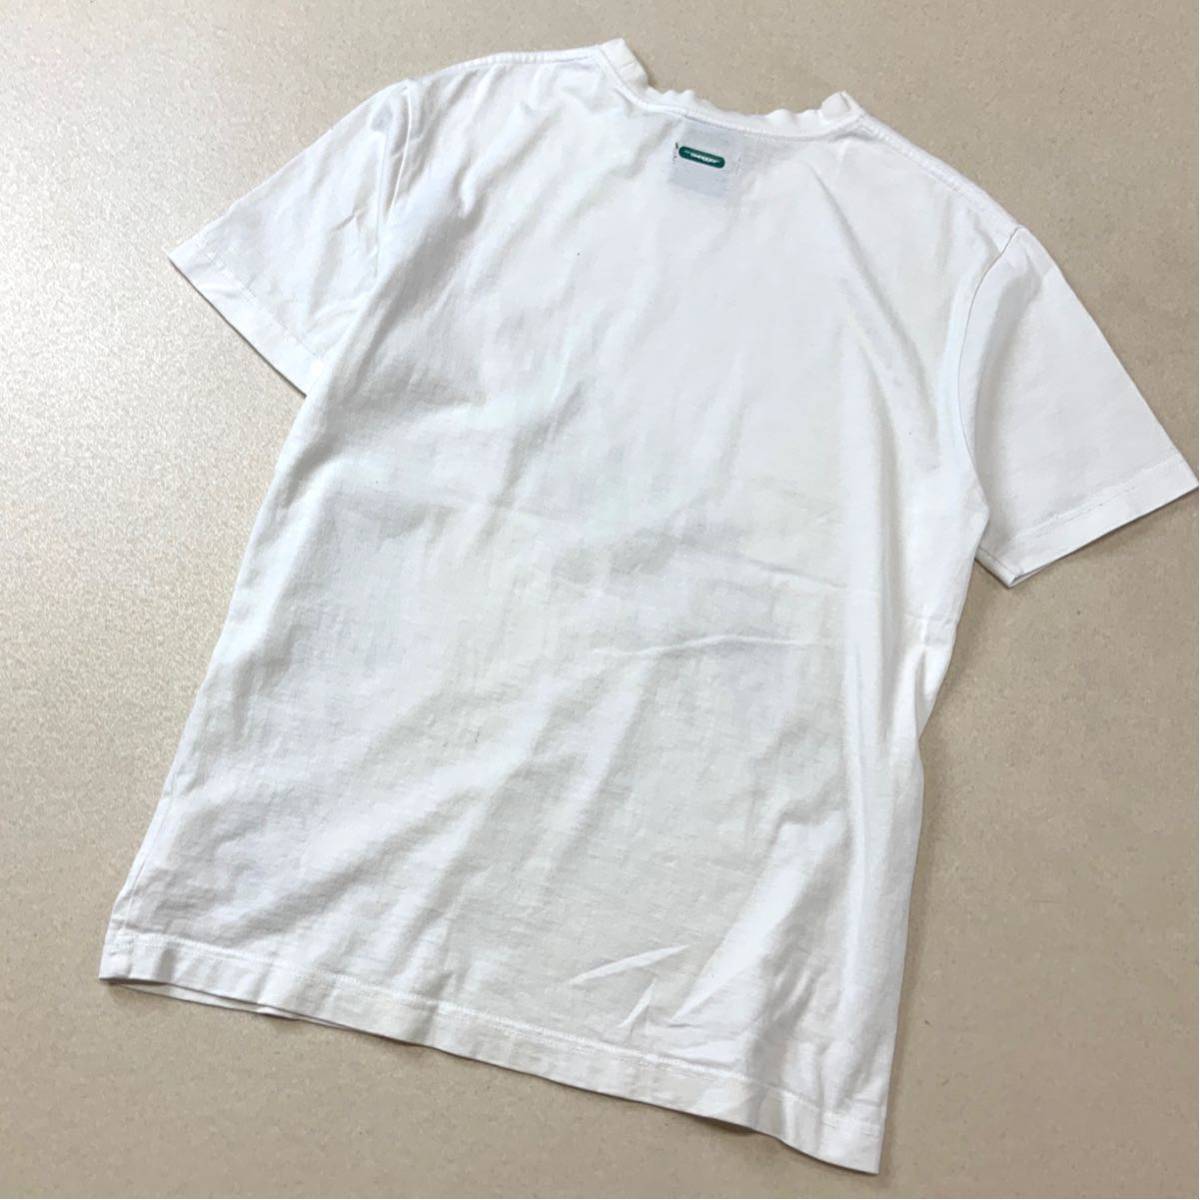 swagger スワッガー ビッグプリント 半袖 tシャツ メンズ Mサイズ ホワイト_画像2